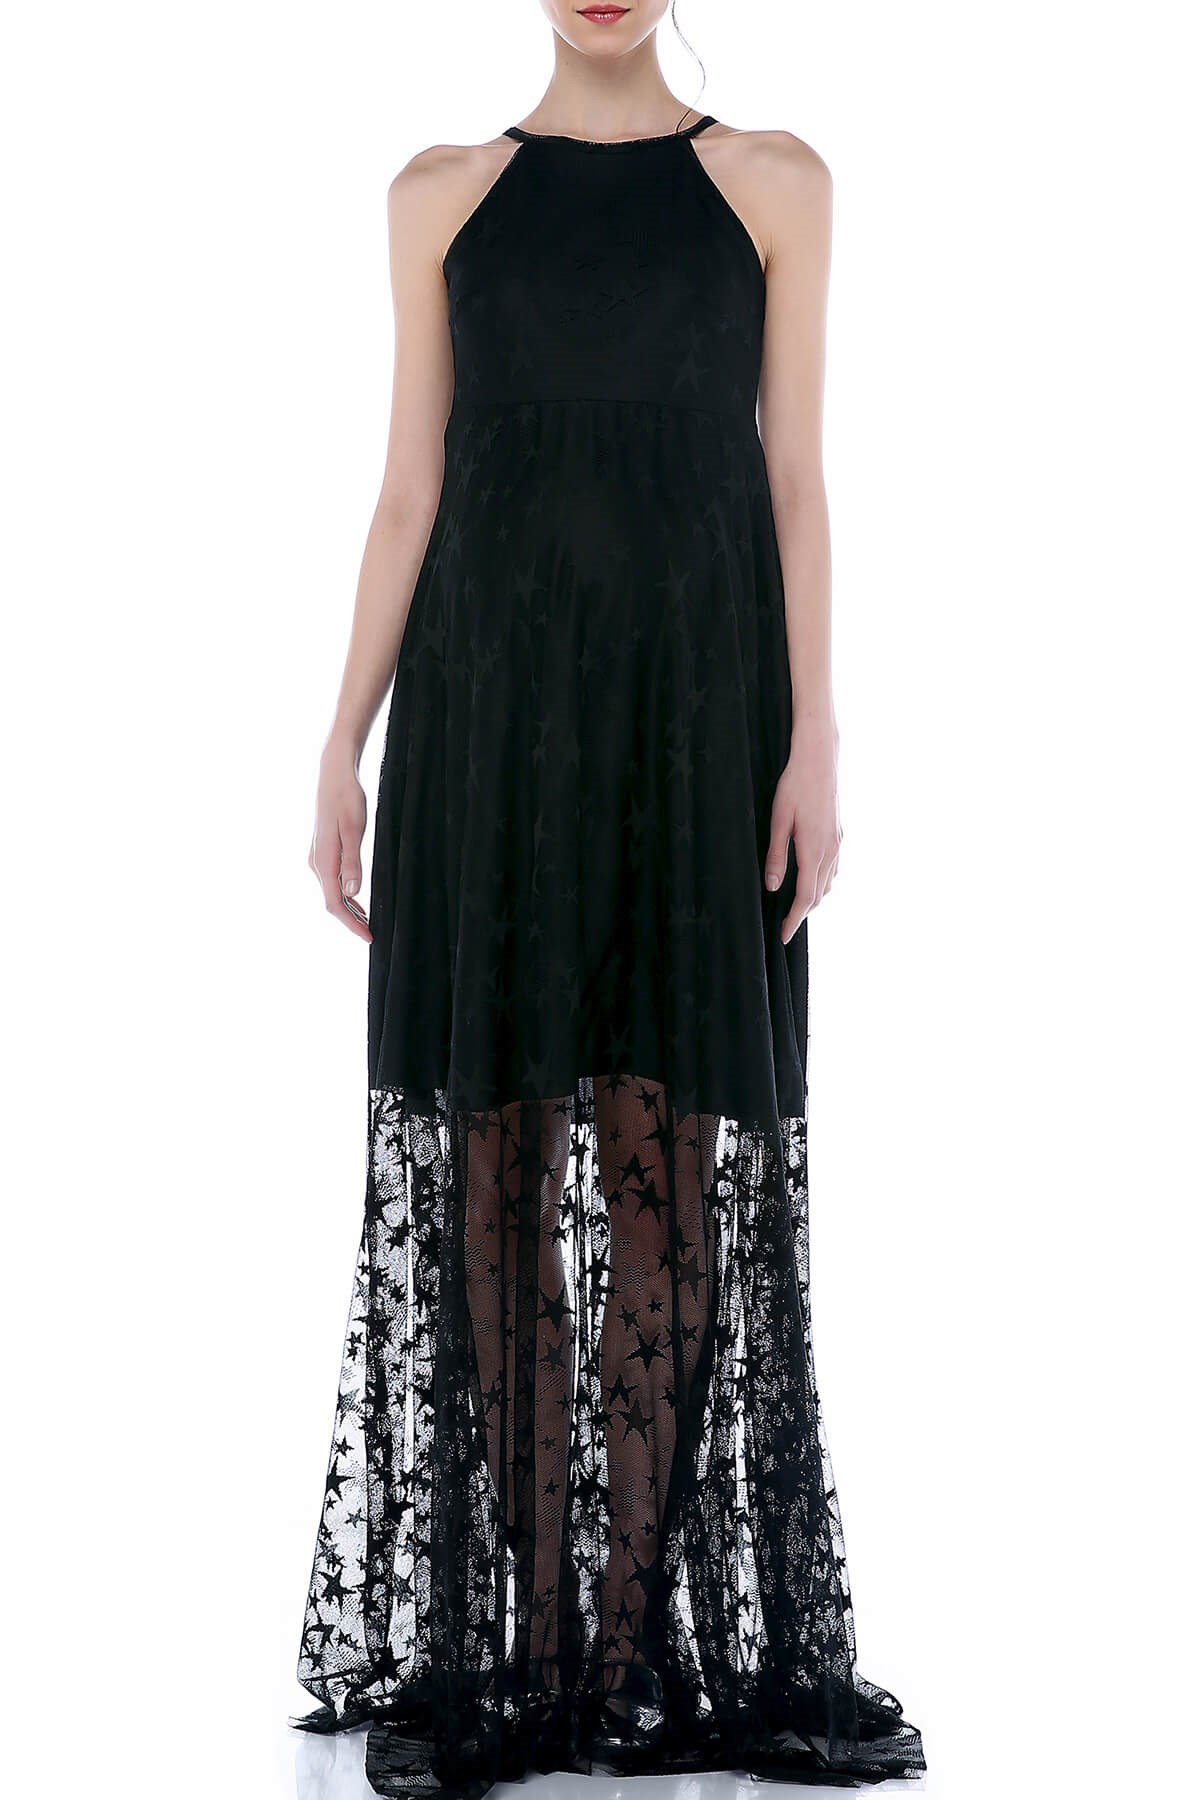 Moda Labio | Kısa Yıldızlı Tül Siyah Elbise